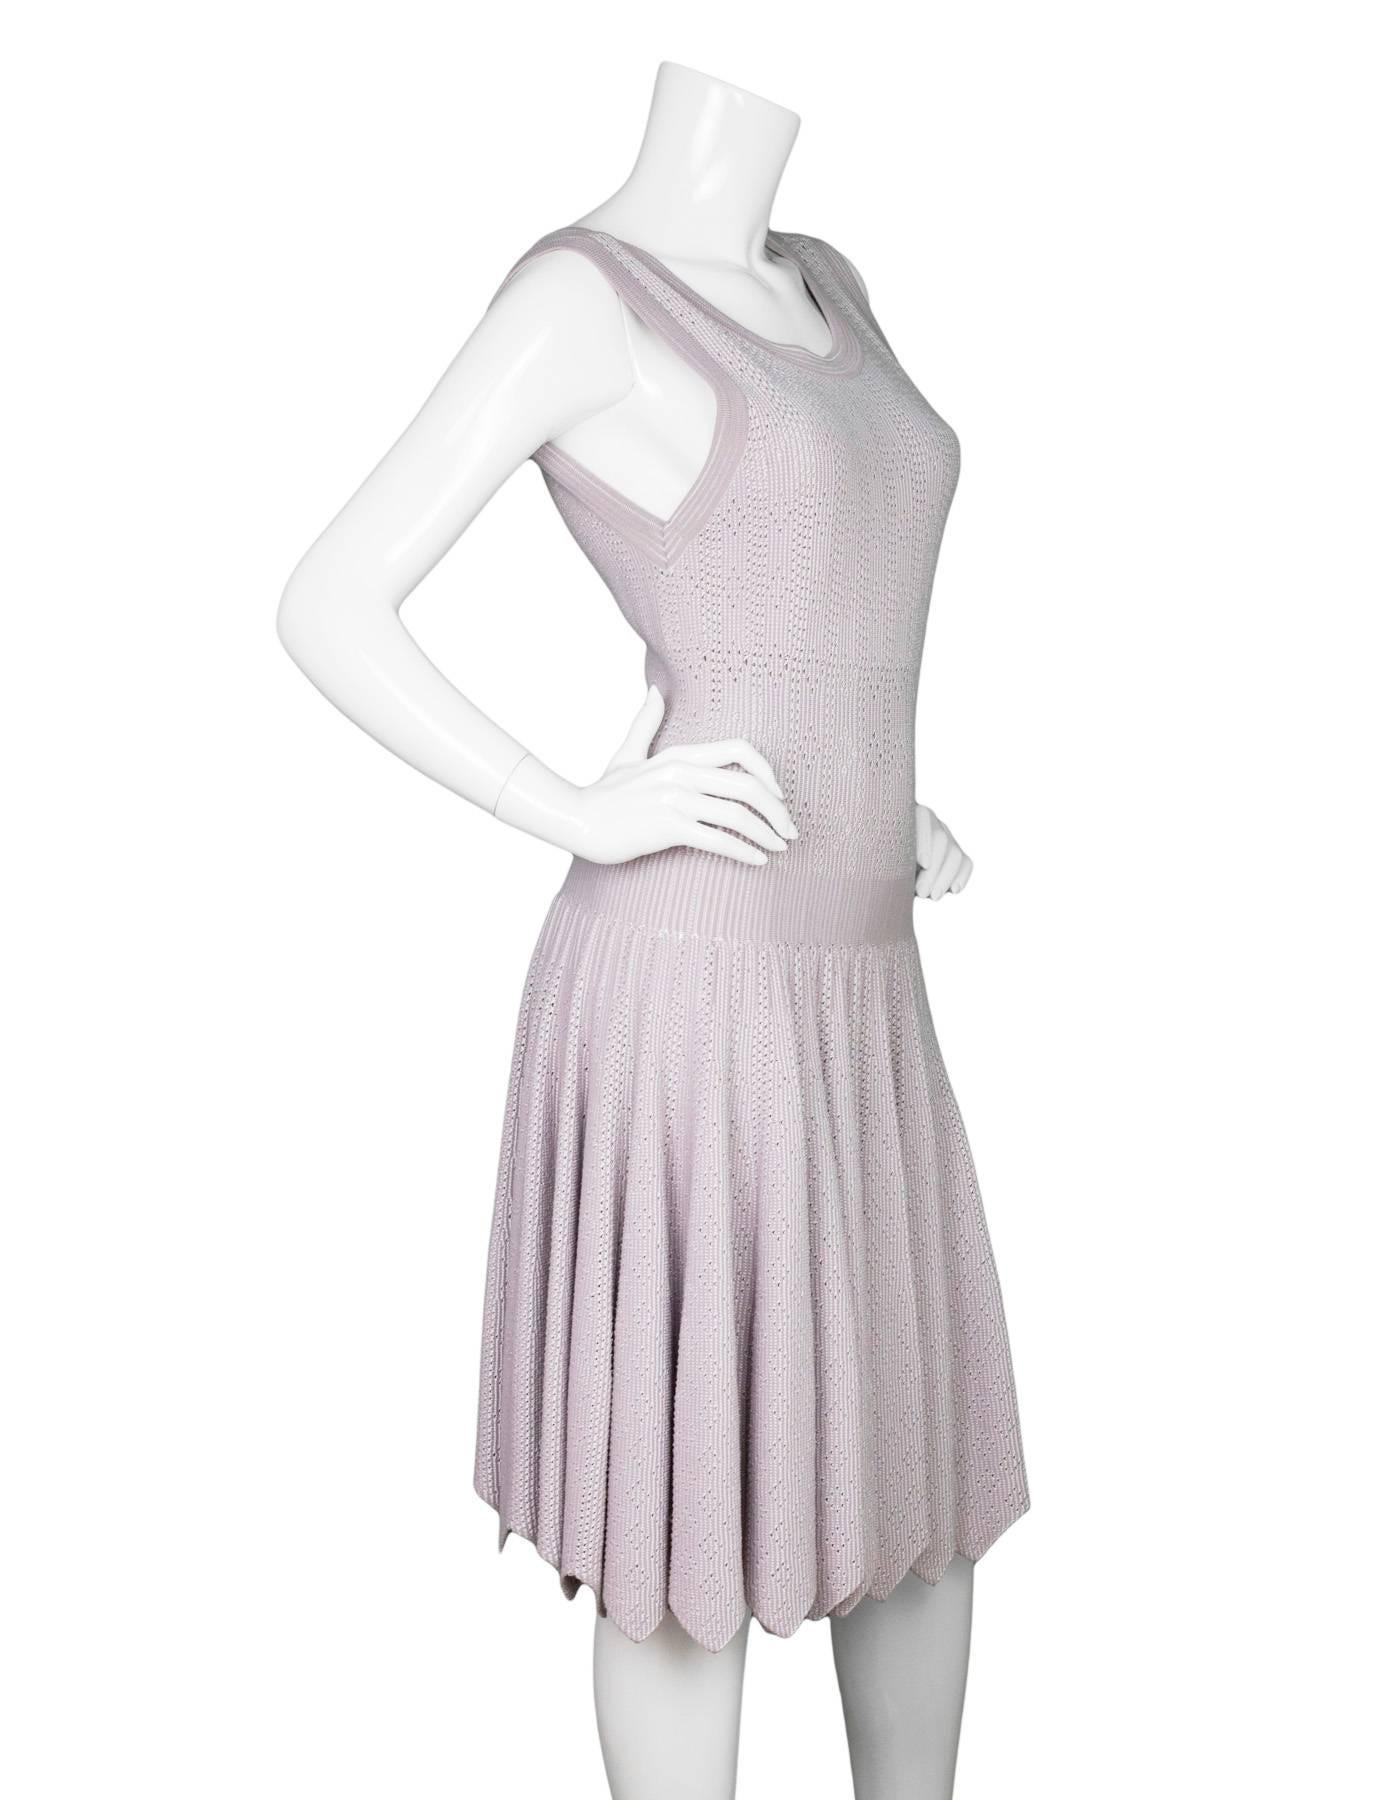 Alaia Mauve Ausgestelltes Kleid mit Lochmuster Gr. FR42
Mit durchgehender Öse

Hergestellt in: Italien
Farbe: Mauve / Lavendel
Zusammensetzung: 85% Viskose, 10% Polyester, 5% Nylon
Auskleidung: Keine
Verschluss/Öffnung: Reißverschluss